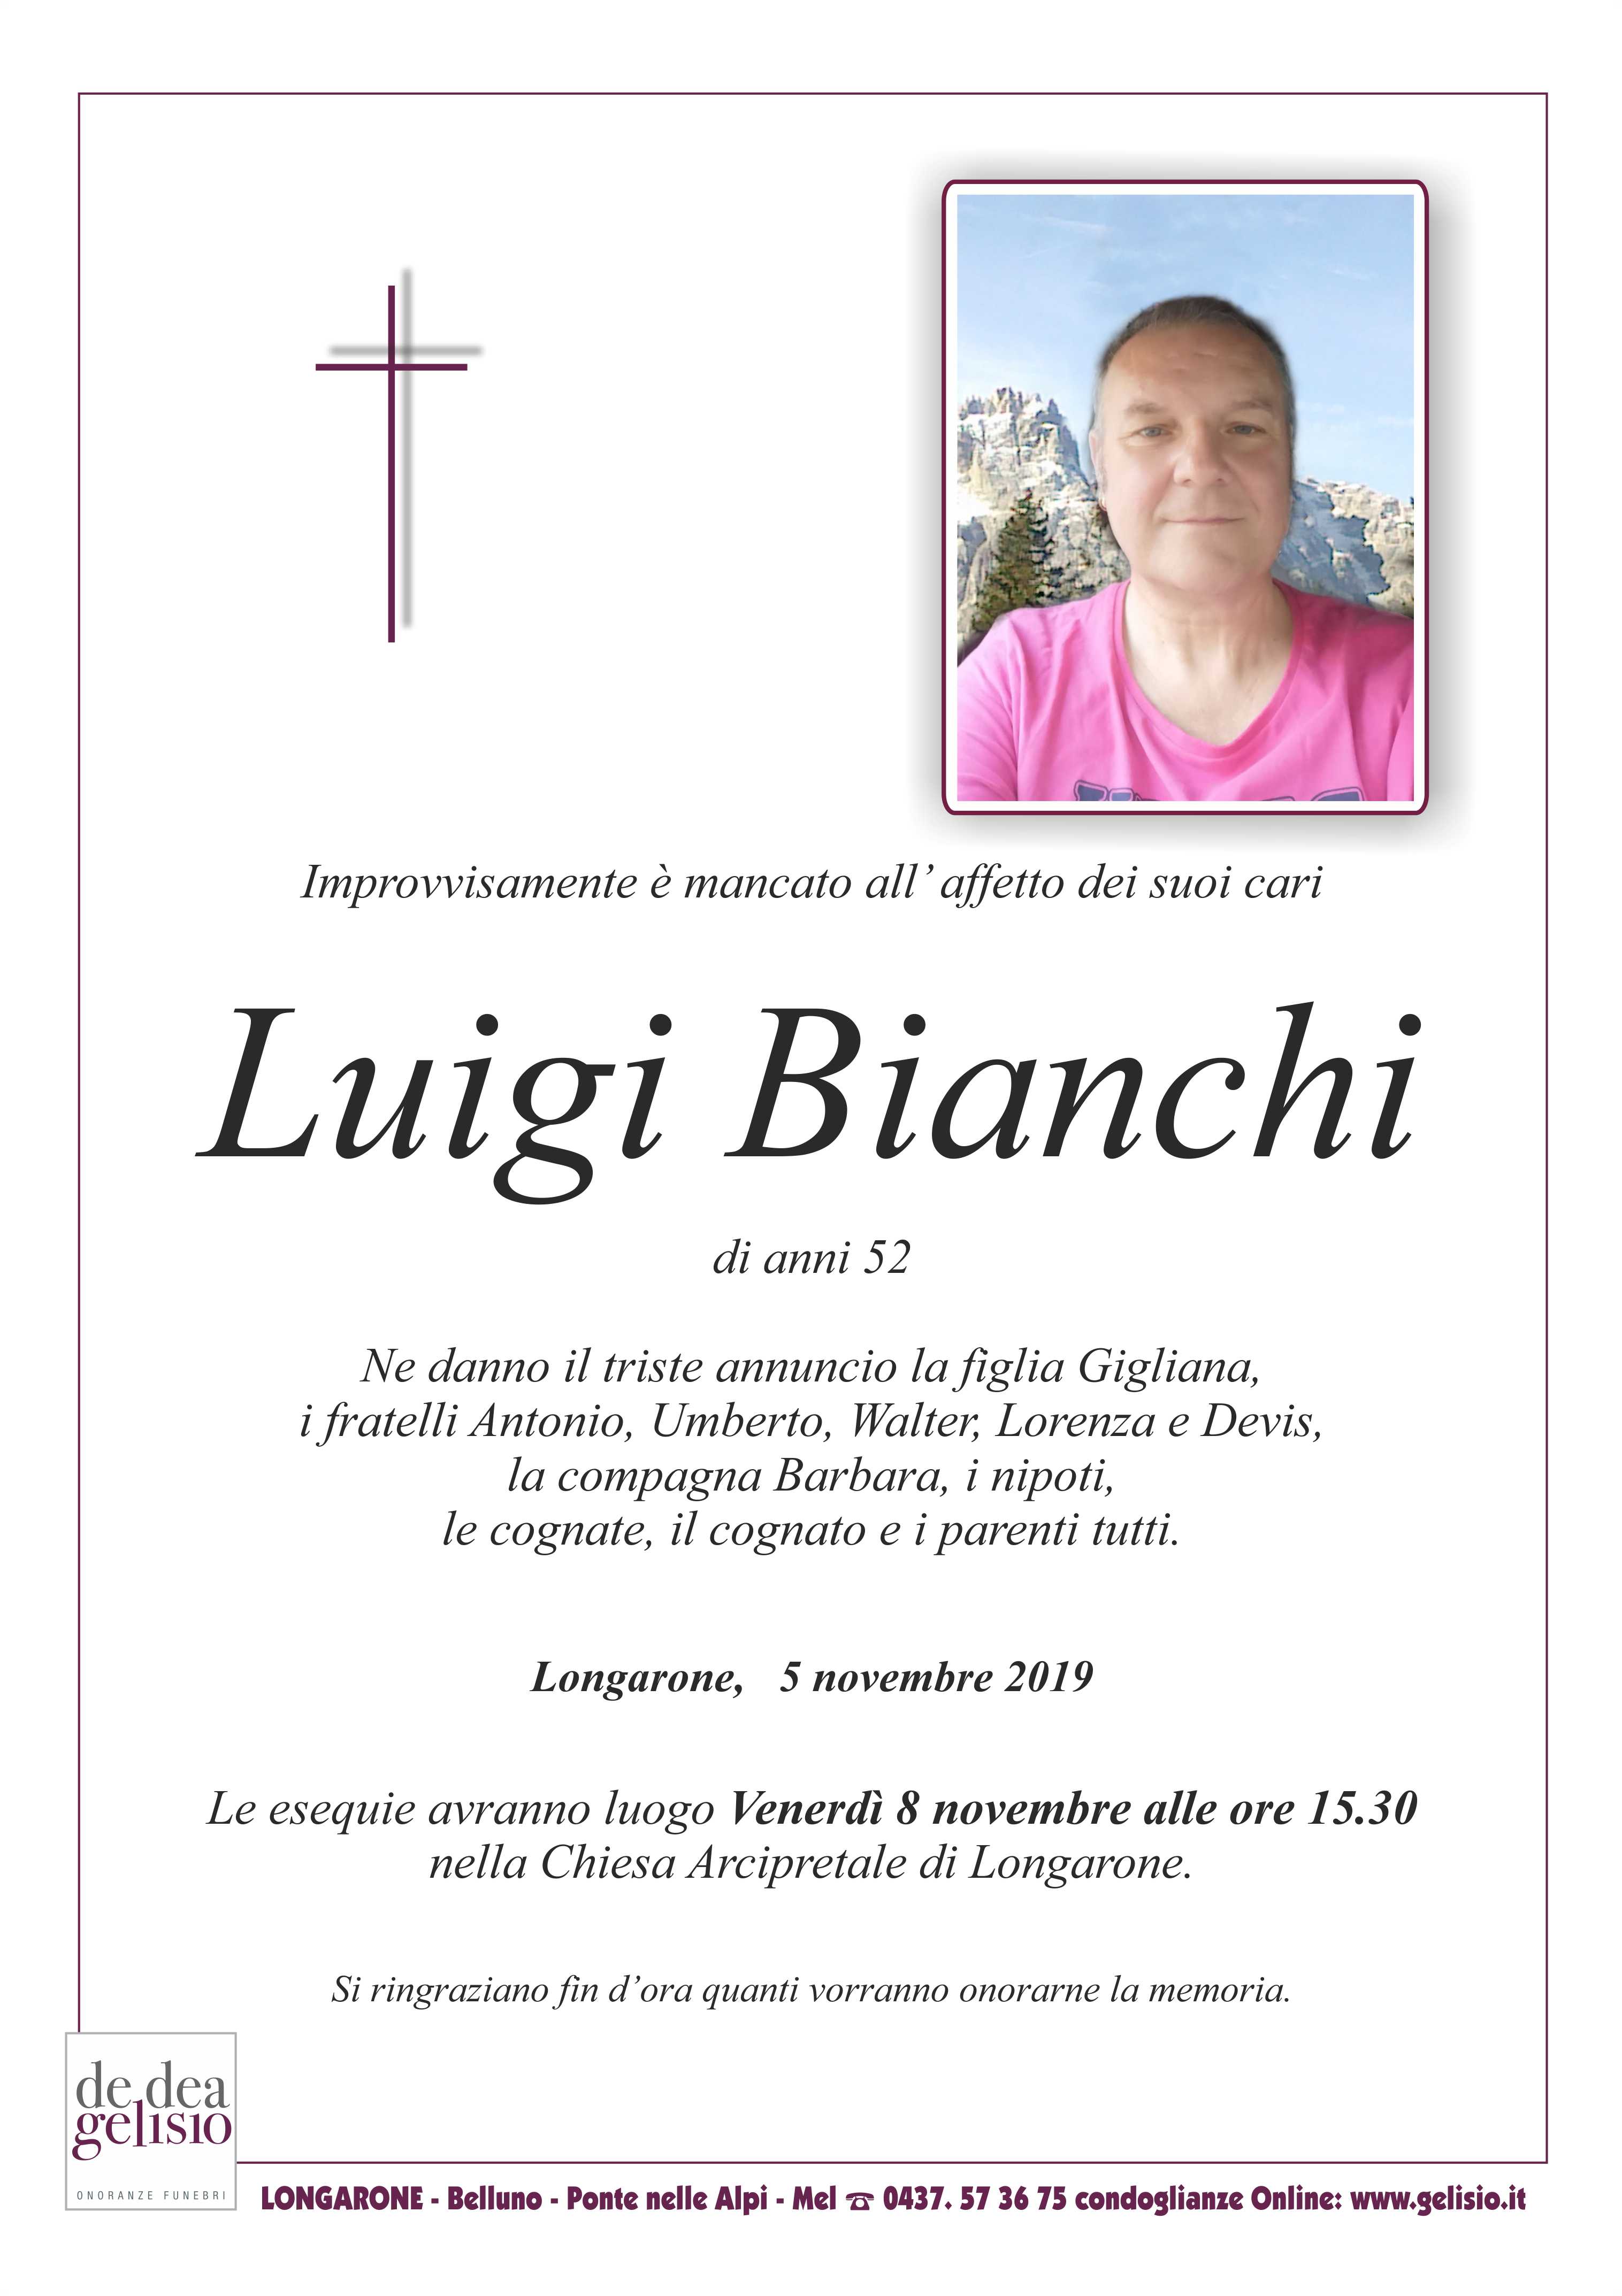 Luigi_Bianchi.jpg